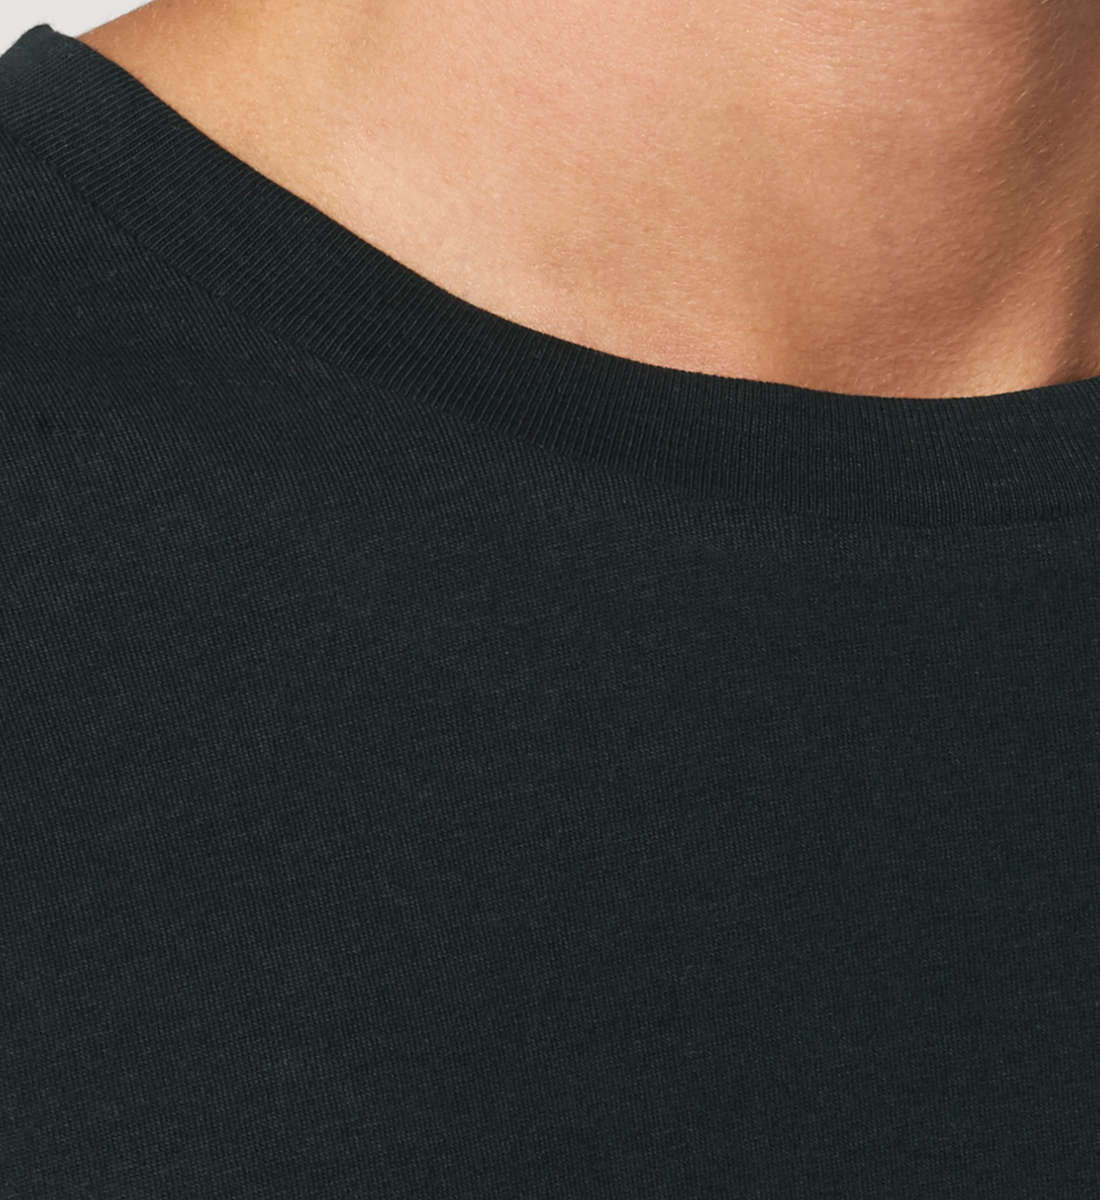 Schwarzes T-Shirt Unisex Relaxed Fit für Frauen und Männer bedruckt mit dem Design der Roger Rockawoo Kollektion You are beautiful